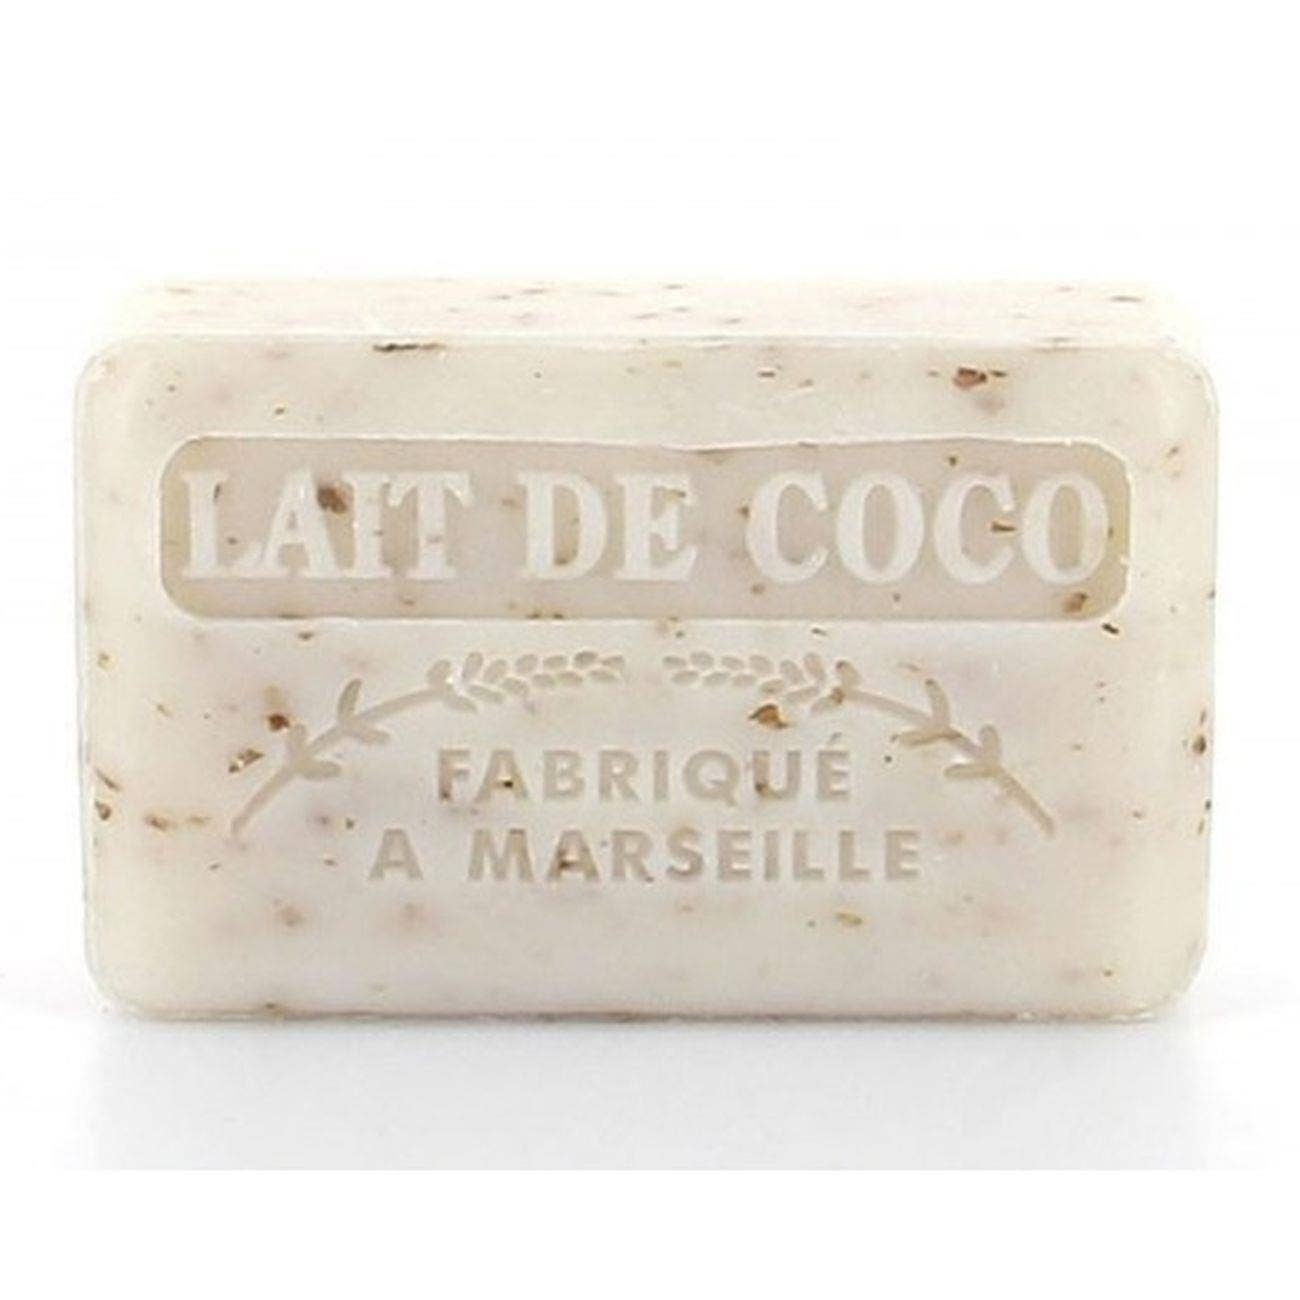 Soap Lait de Coco (Coconut Milk) 125g